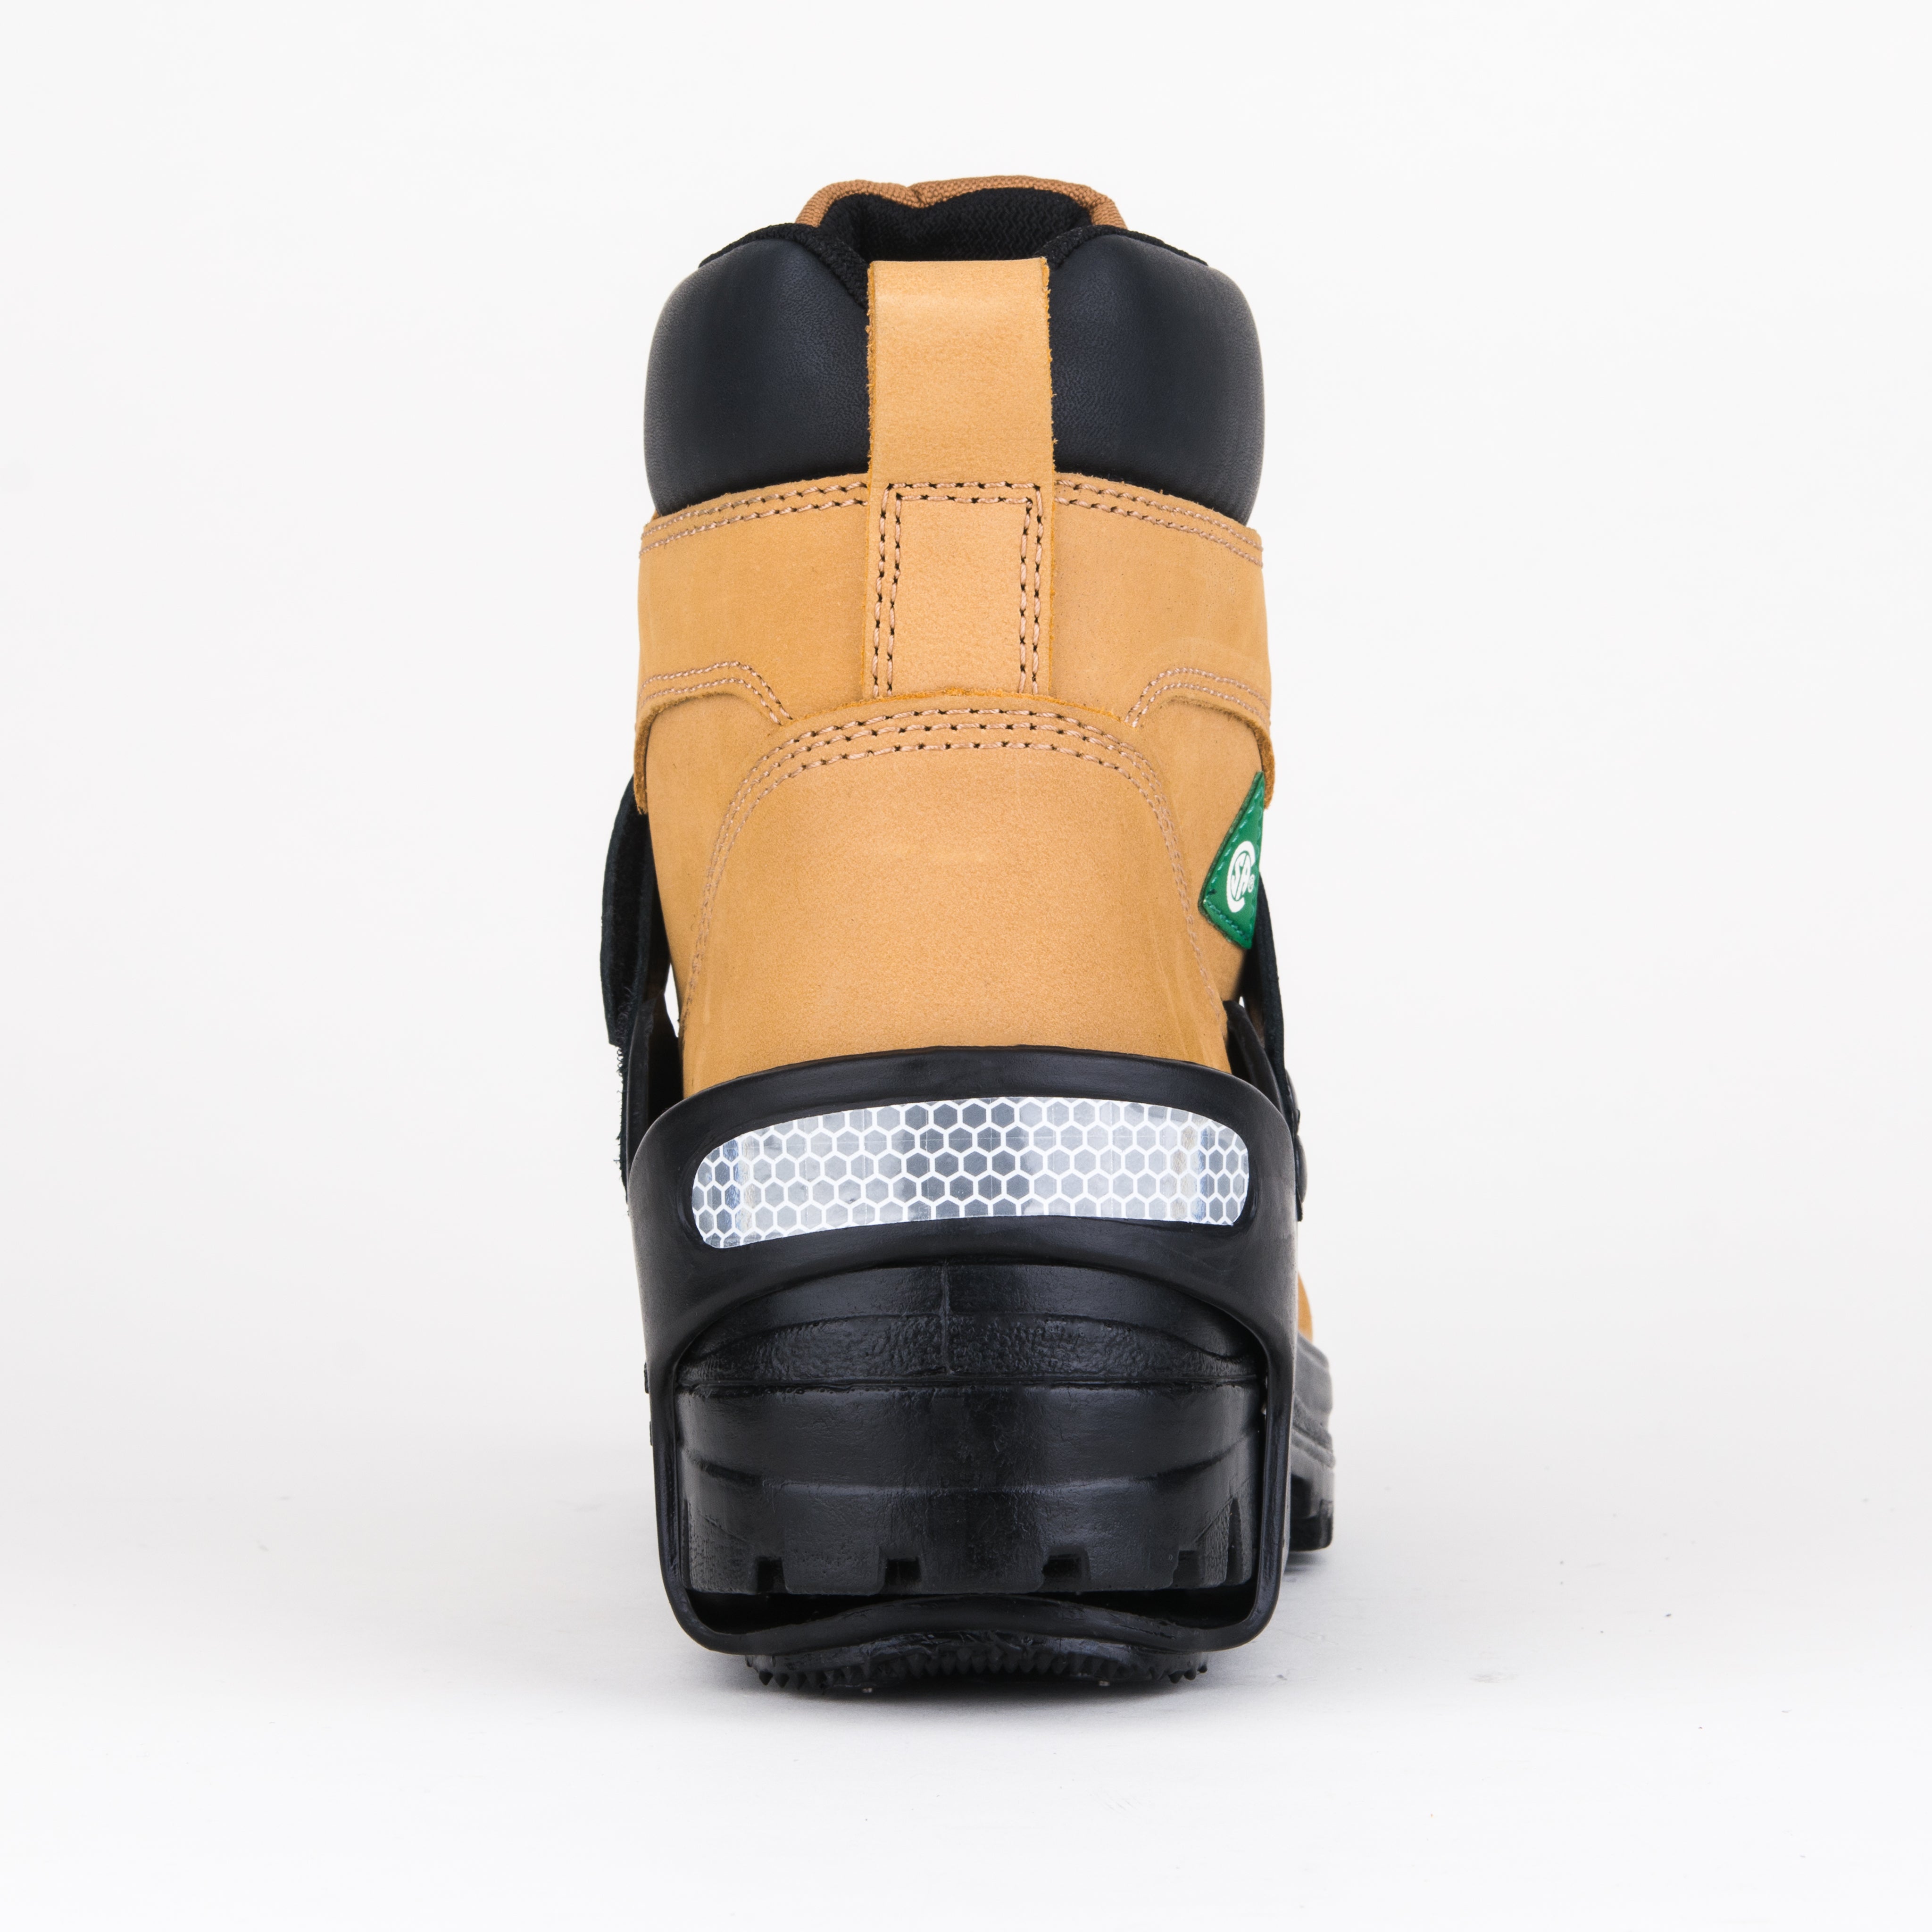 K1 Series Heelstop Original Anti-Slip Heel Traction Aid | Size M - 2XL Work Boots - Cleanflow